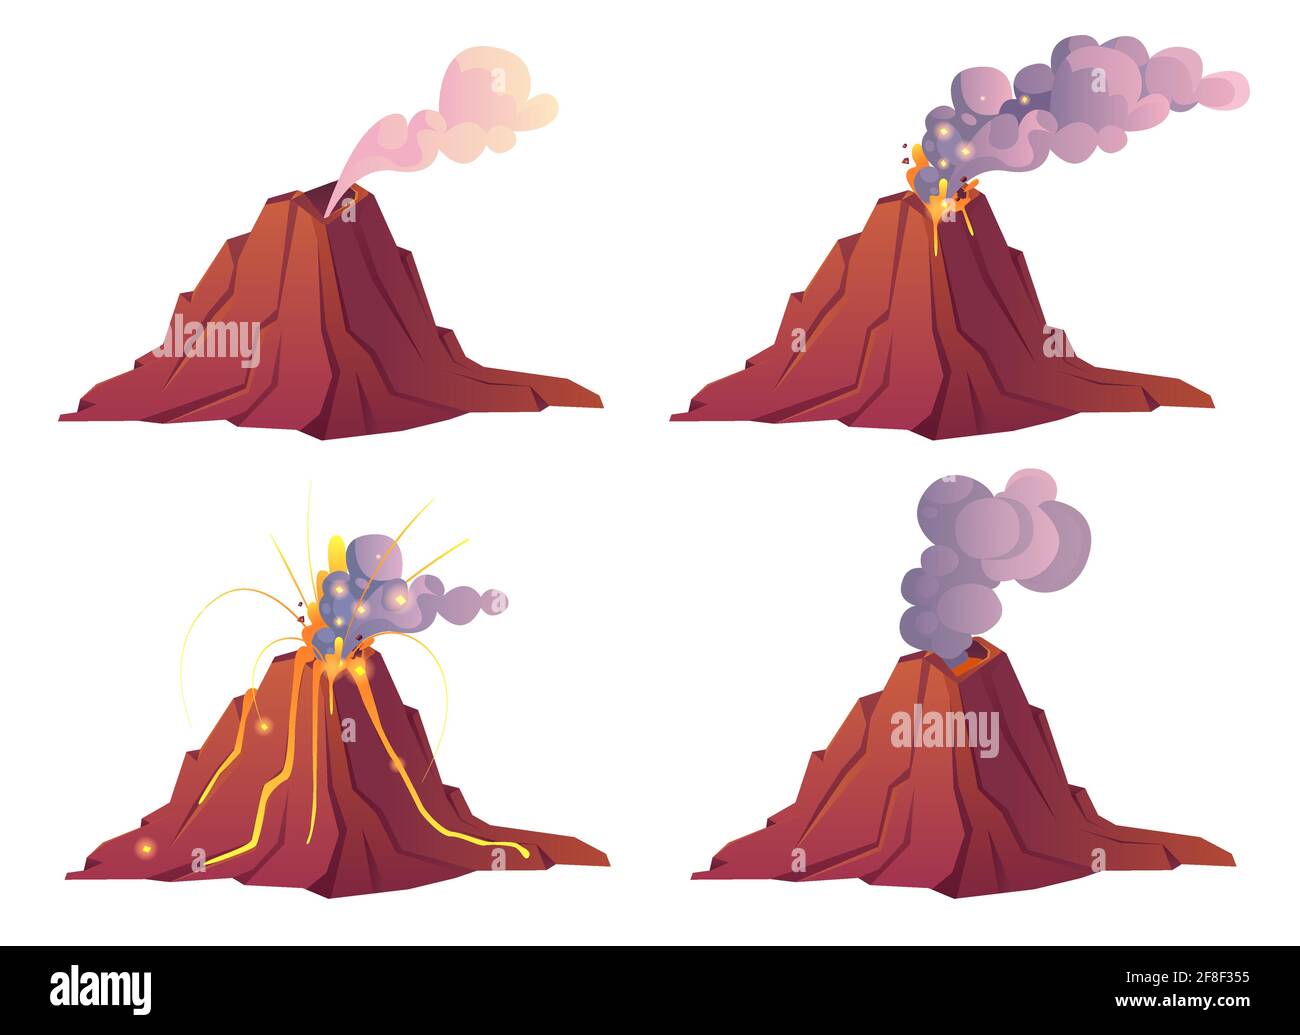 Vulkanausbrüche. Der Vulkan bricht mit heißer Lava, Feuer und Wolken aus Rauch, Asche und Gasen aus. Vektor Cartoon Satz von Berg mit Krater und Fluss Magma isoliert auf weißem Hintergrund Stock Vektor